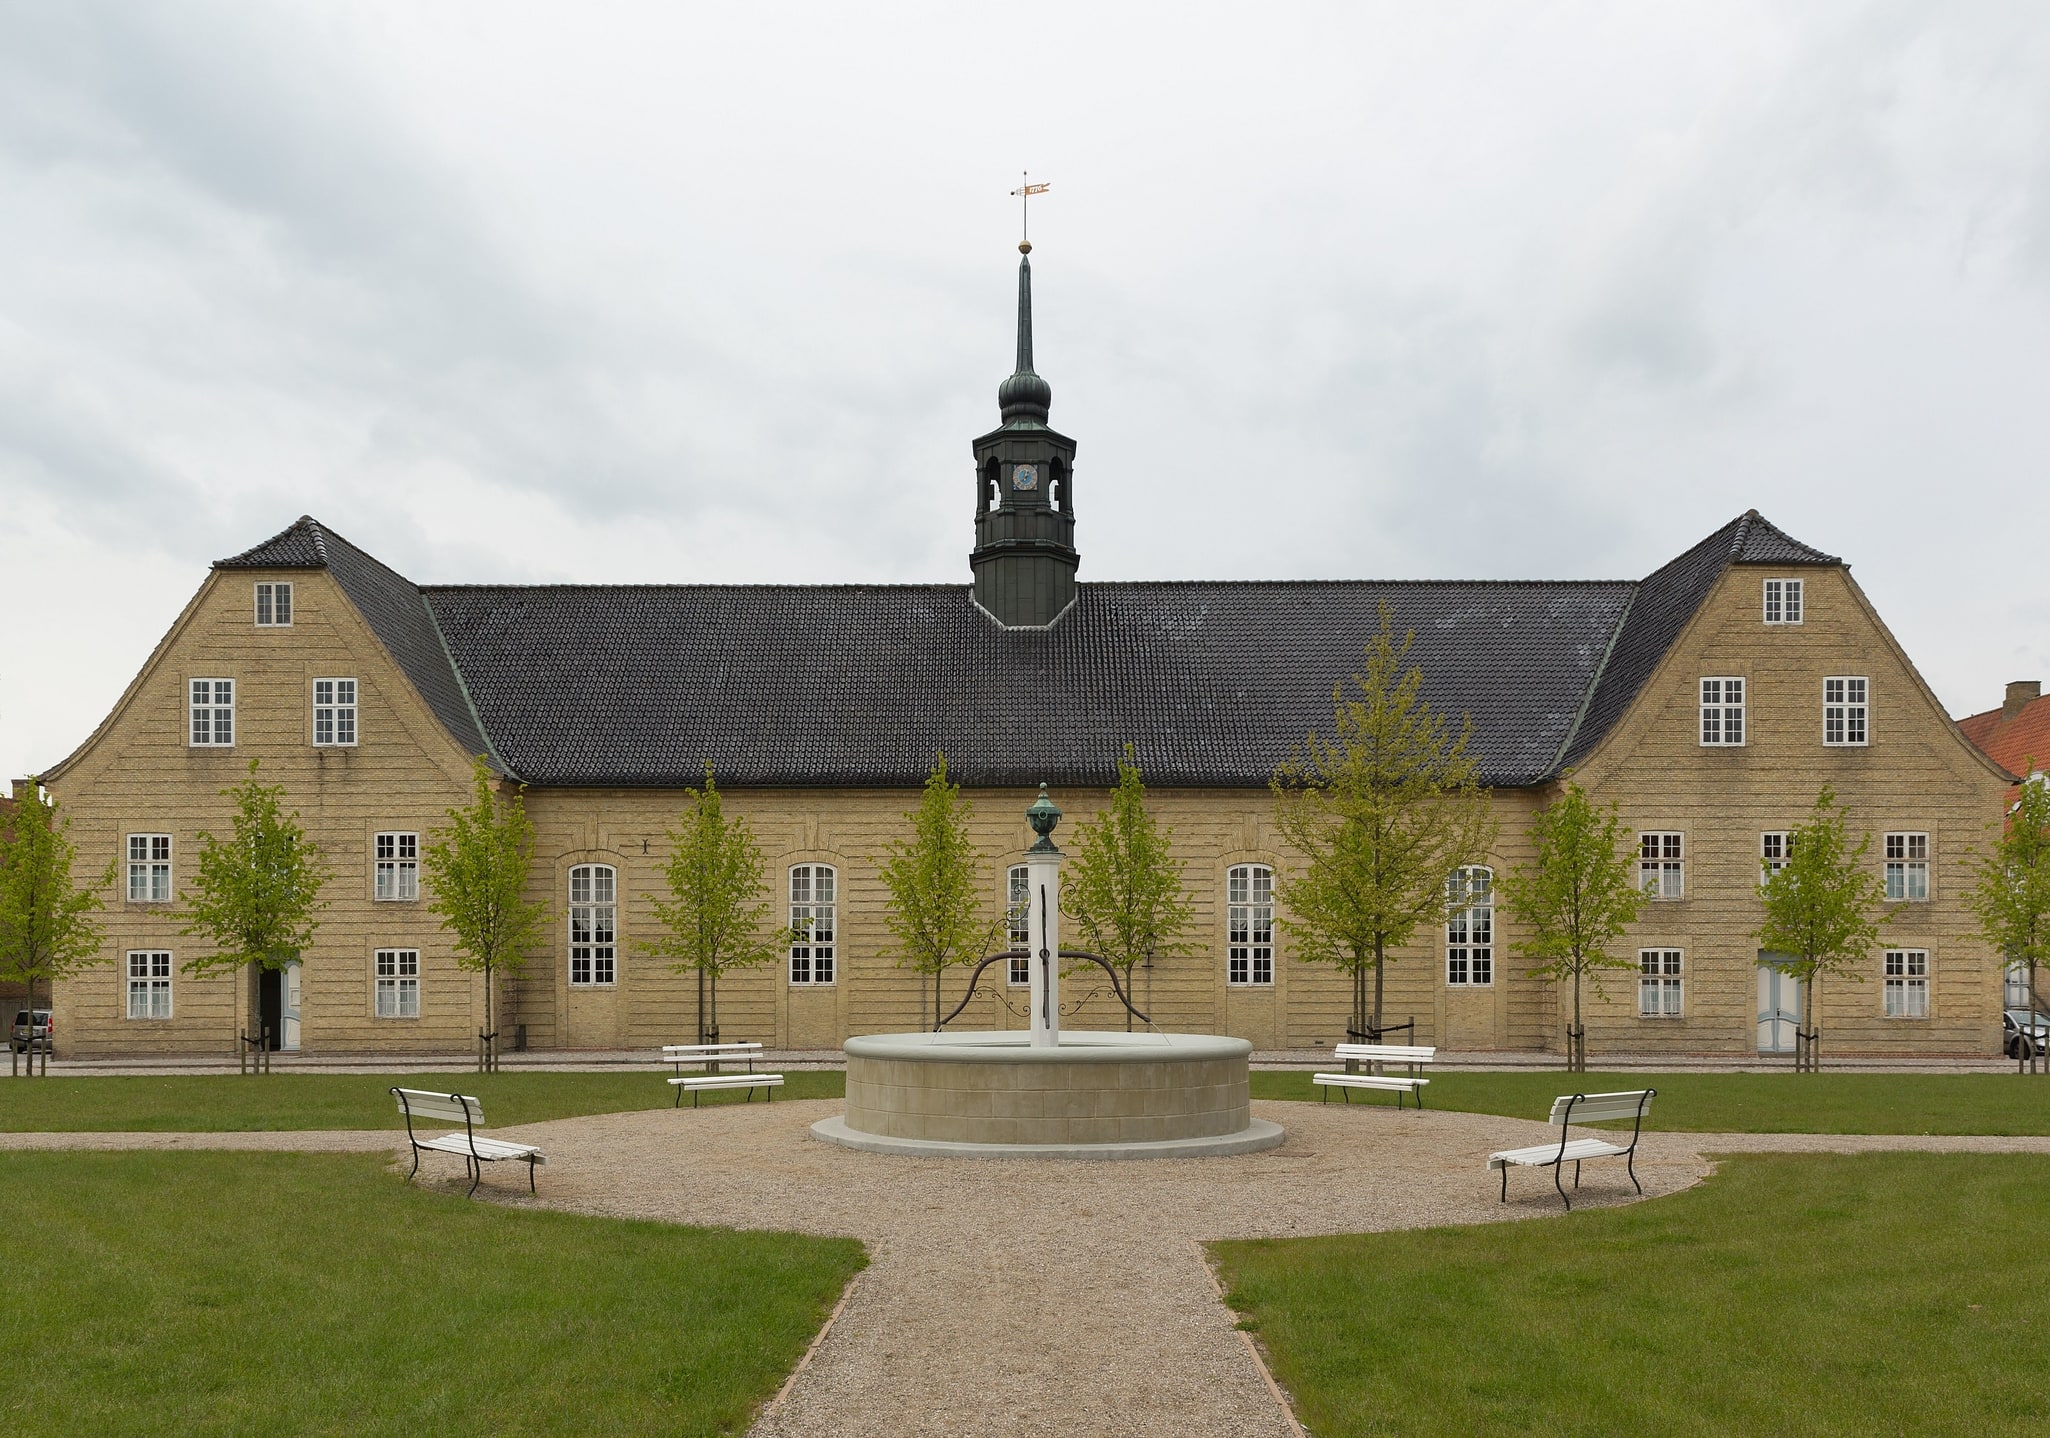 Christiansfeld, Denmark